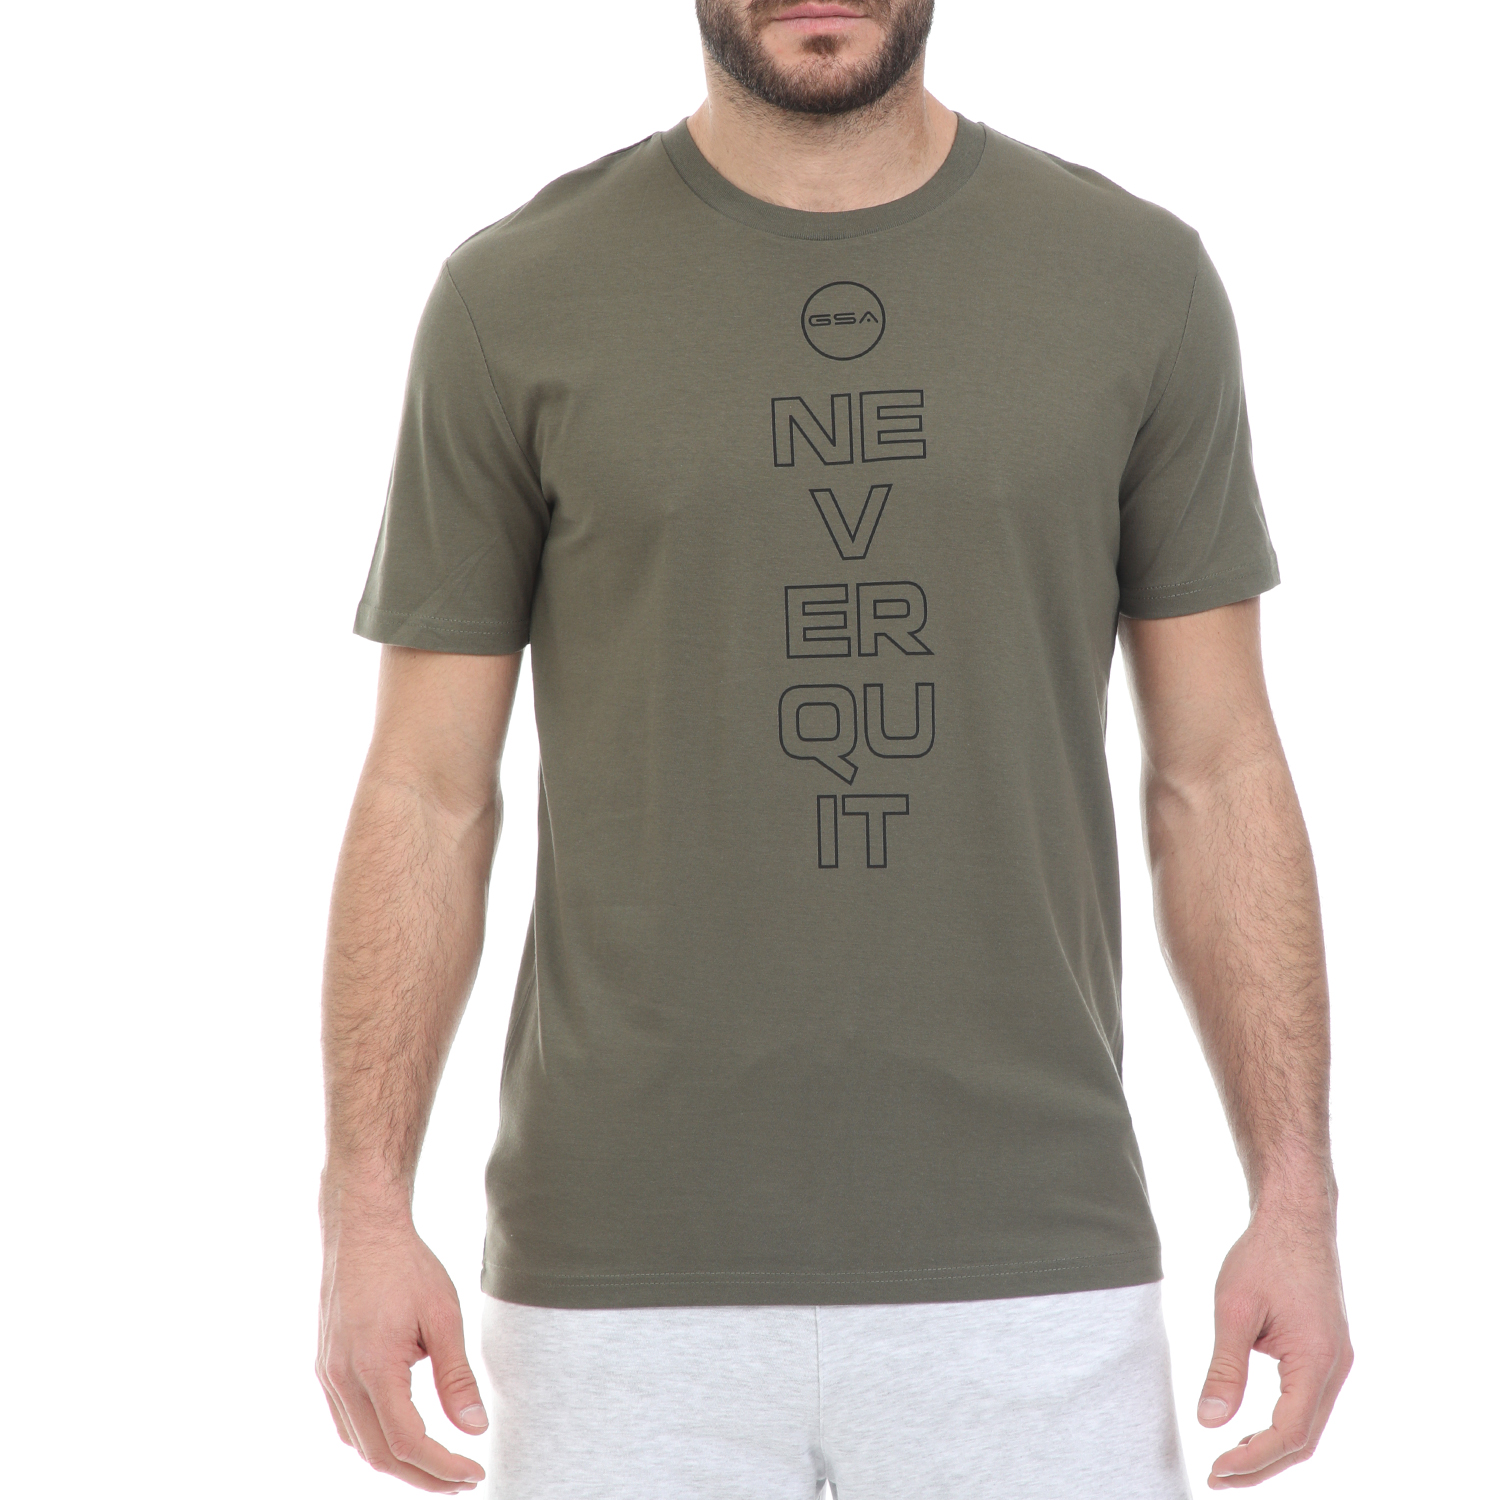 Ανδρικά/Ρούχα/Μπλούζες/Κοντομάνικες GSA - Ανδρικό t-shirt GSA ORGANIC PLUS χακί